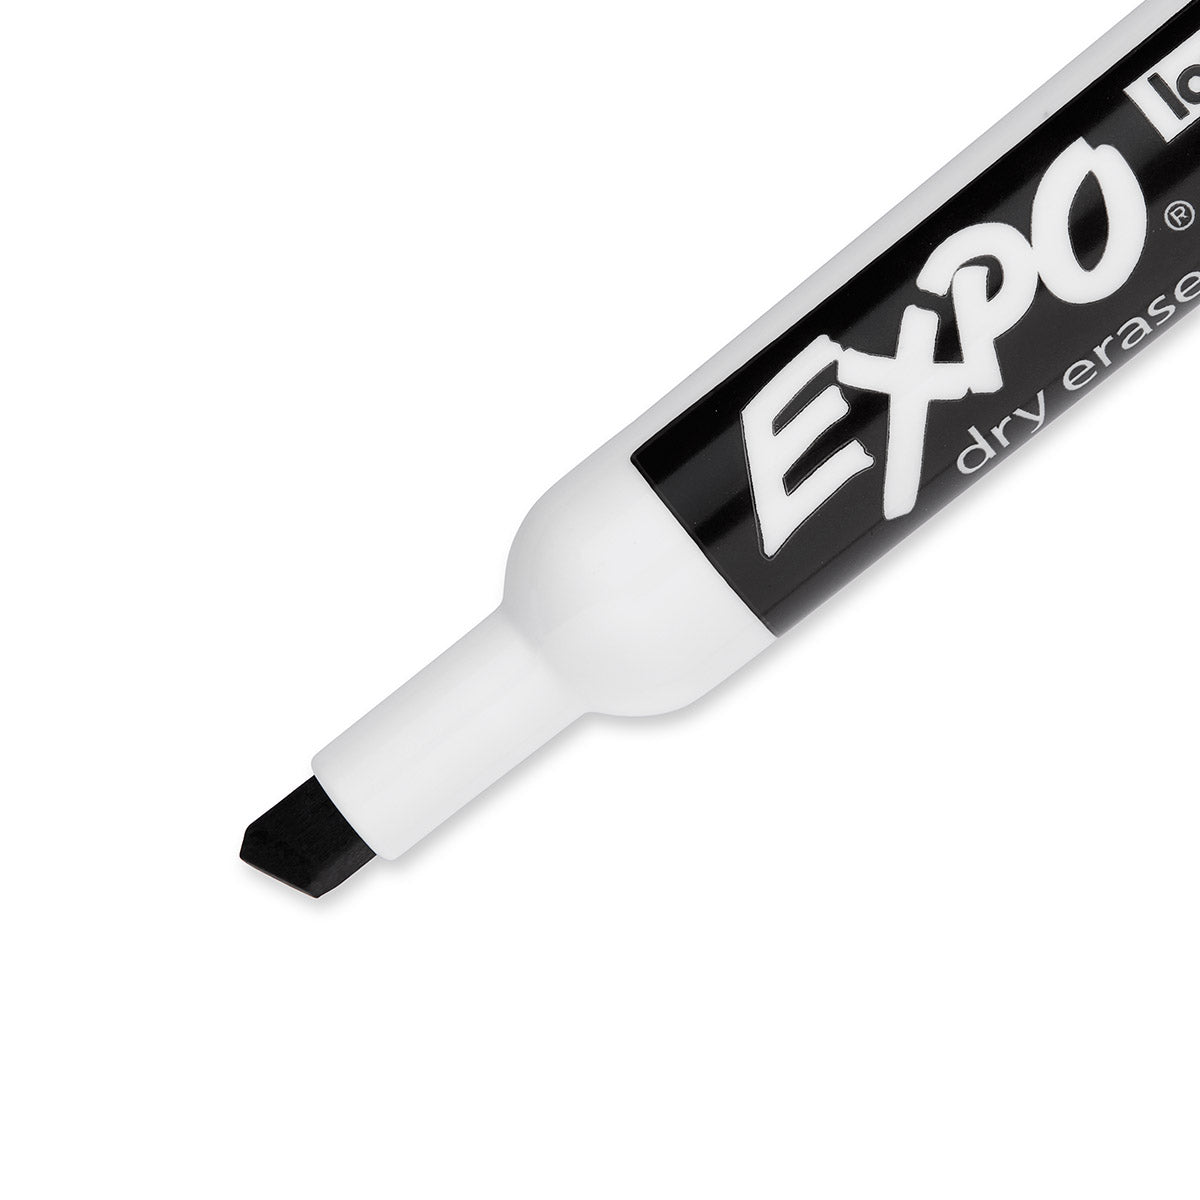 Expo Dry Erase Low Odor Black Marker Chisel Tip